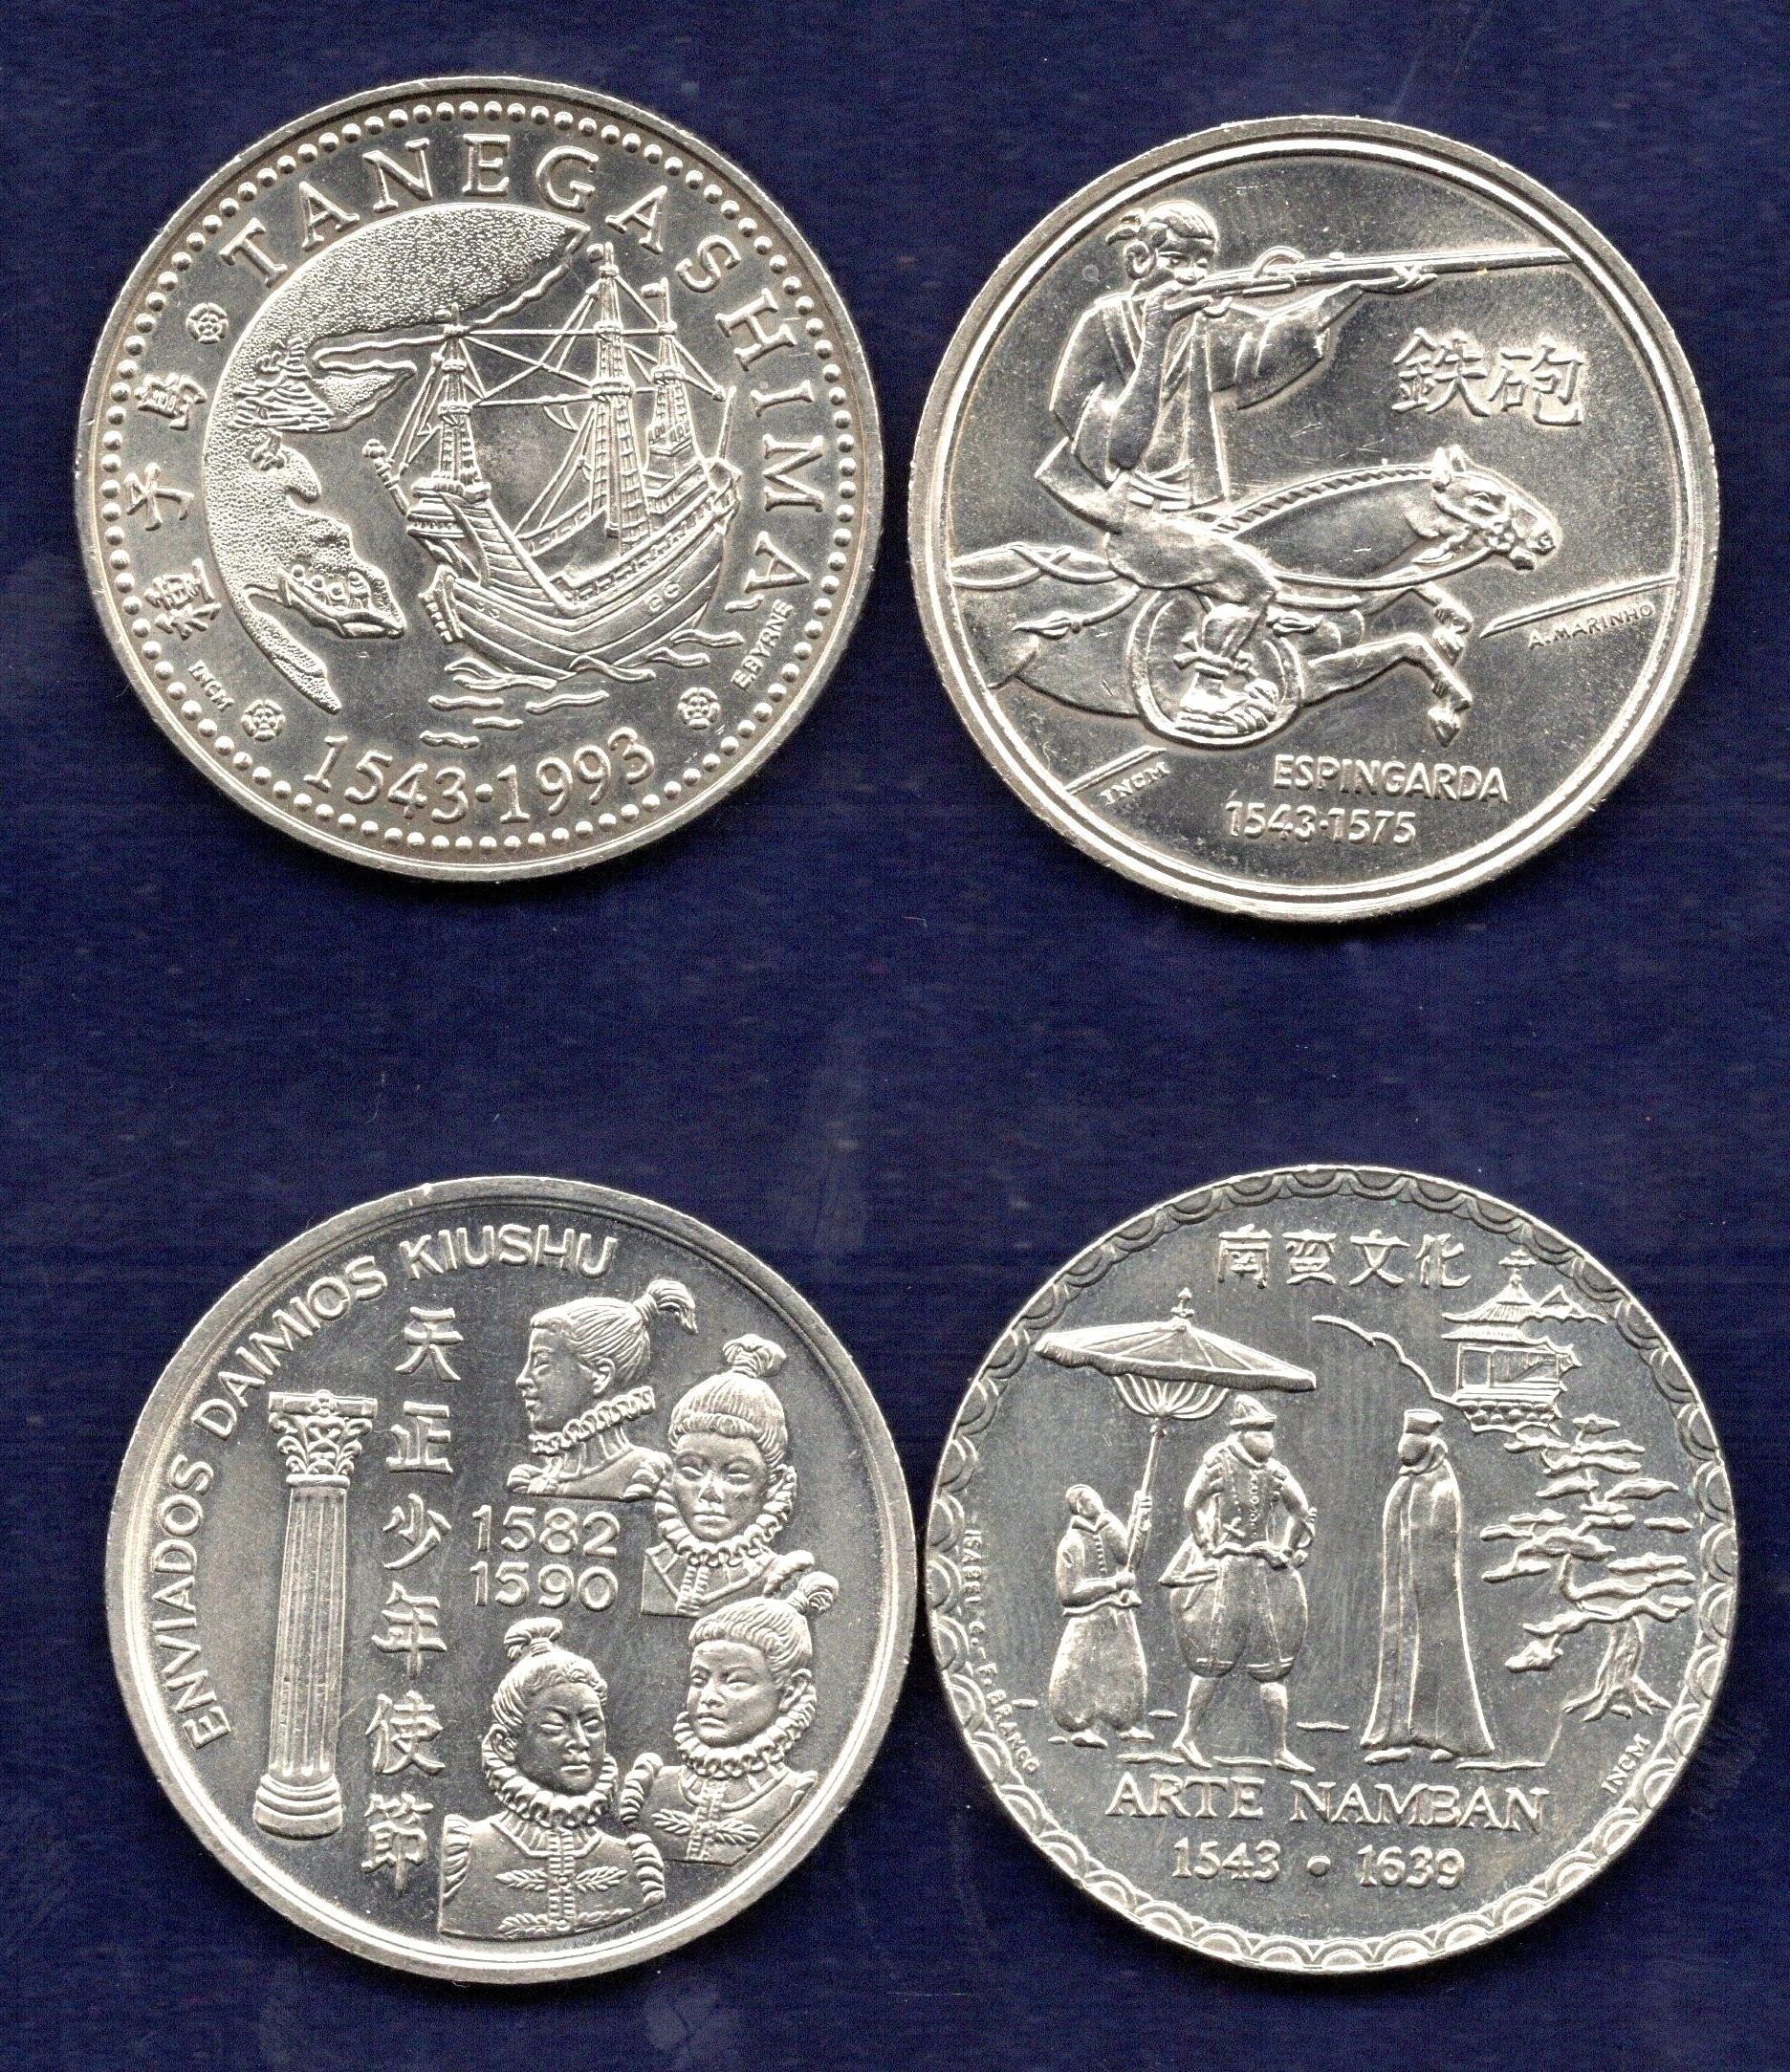 Coleção de moedas da República - Série IV dos Descobrimentos